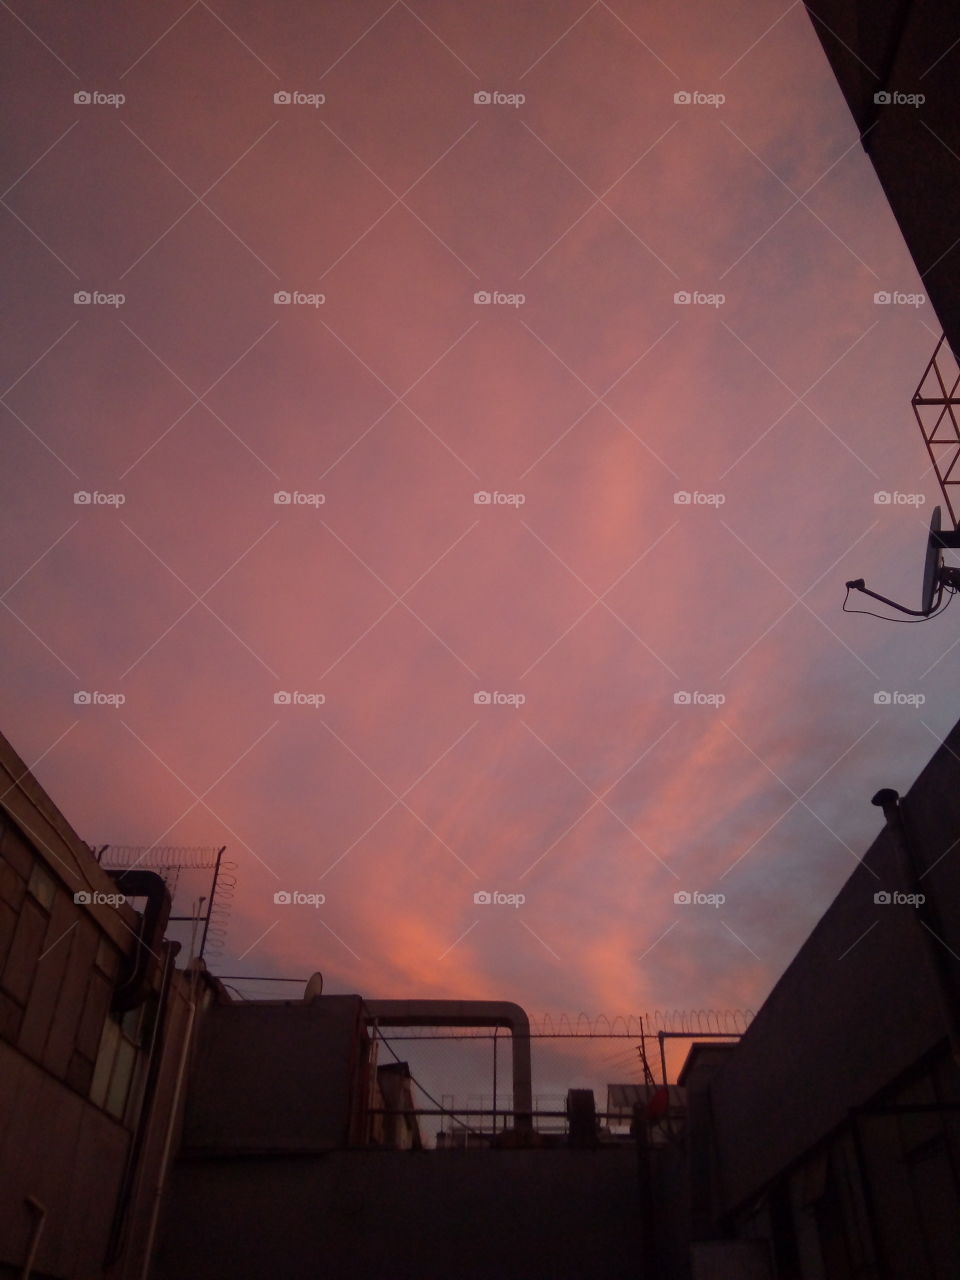 foto del cielo en un atardecer en la CDMX tomada desde la ventana de un edificio. el cielo con las nubes y el atardecer hacen un efecto de color rojizo.